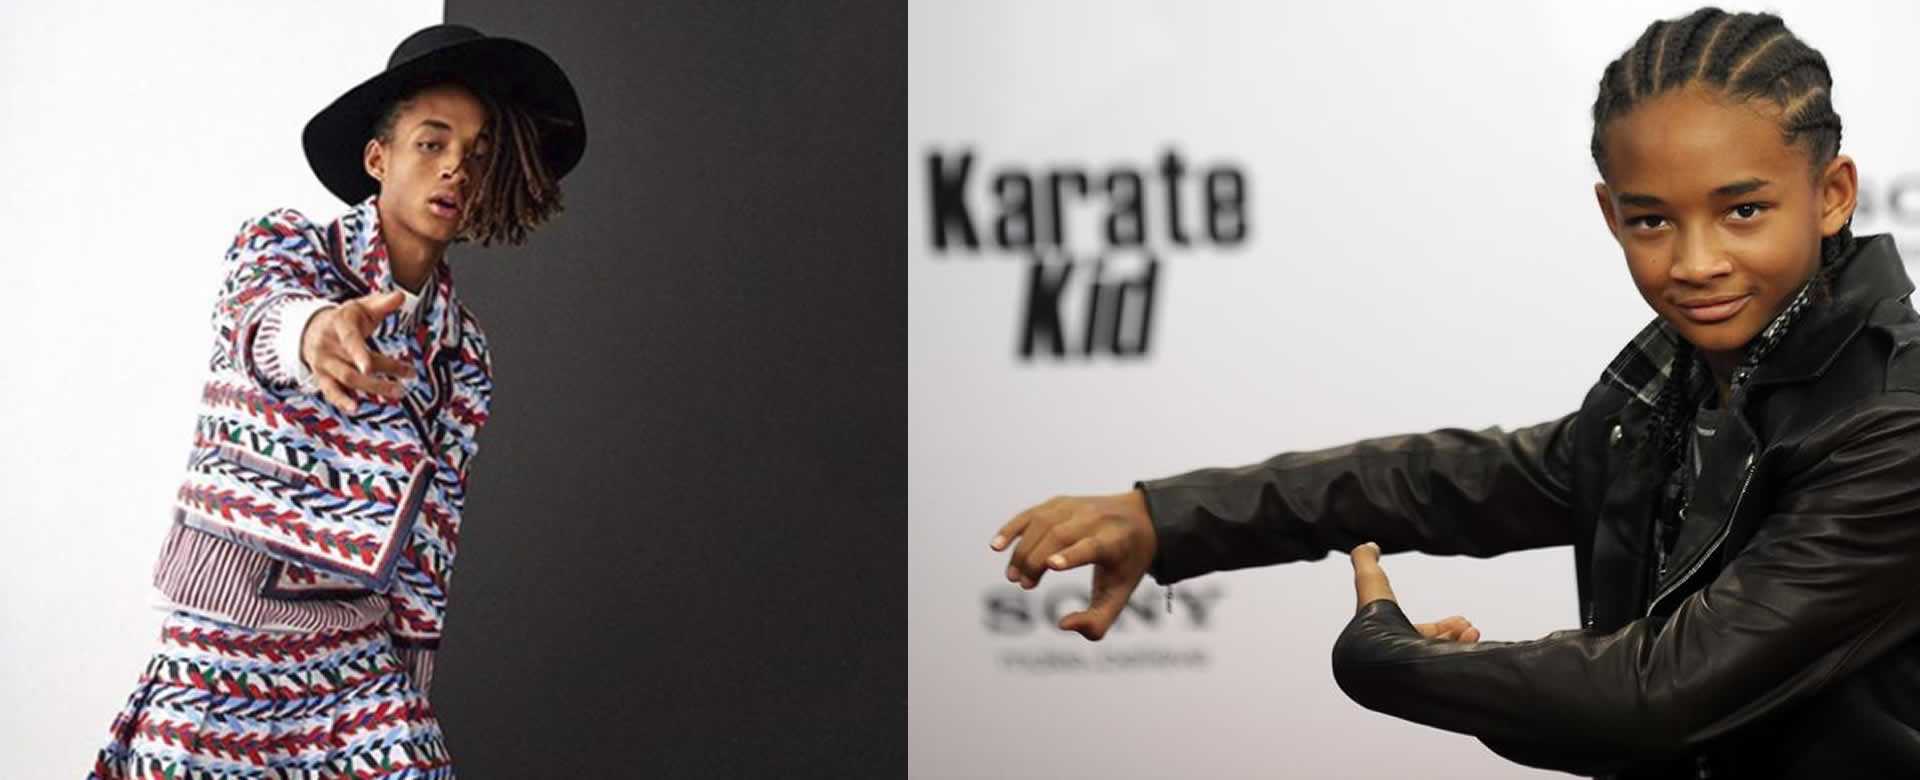 Así luce Jaden Smith luego del carismático niño de Karate Kid